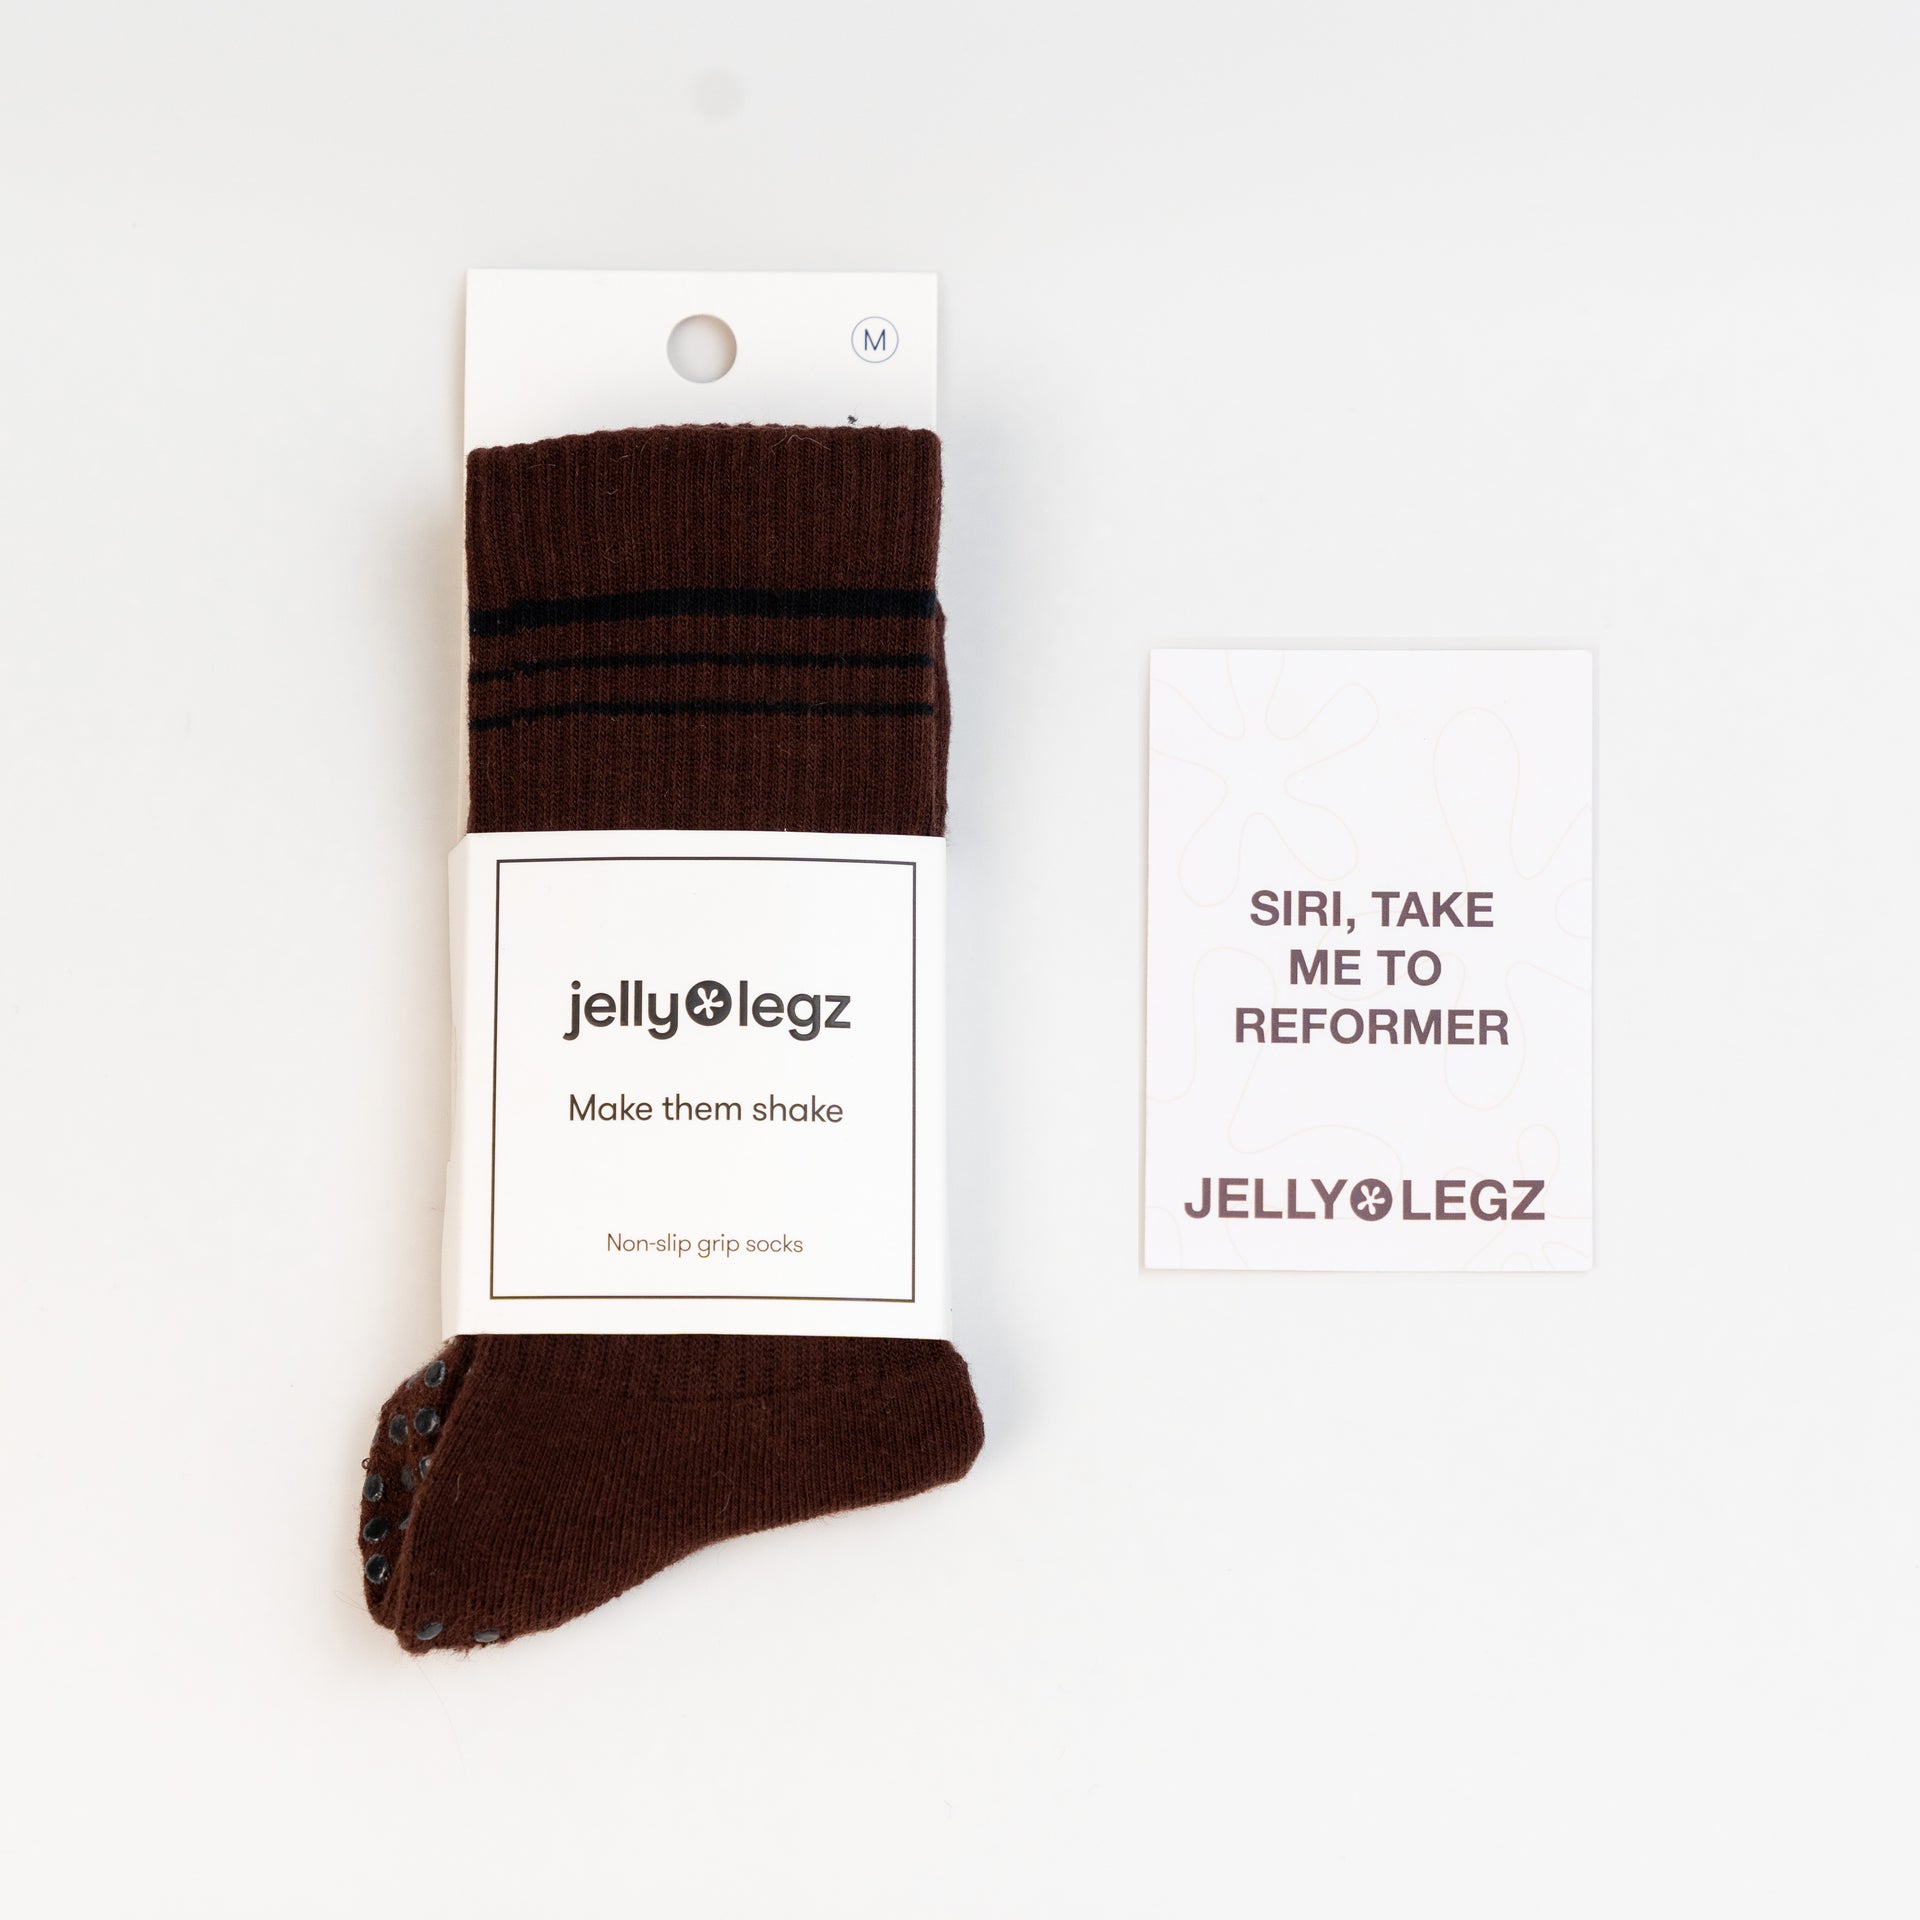 Reformer Pilates Grip Socks by Jellylegz